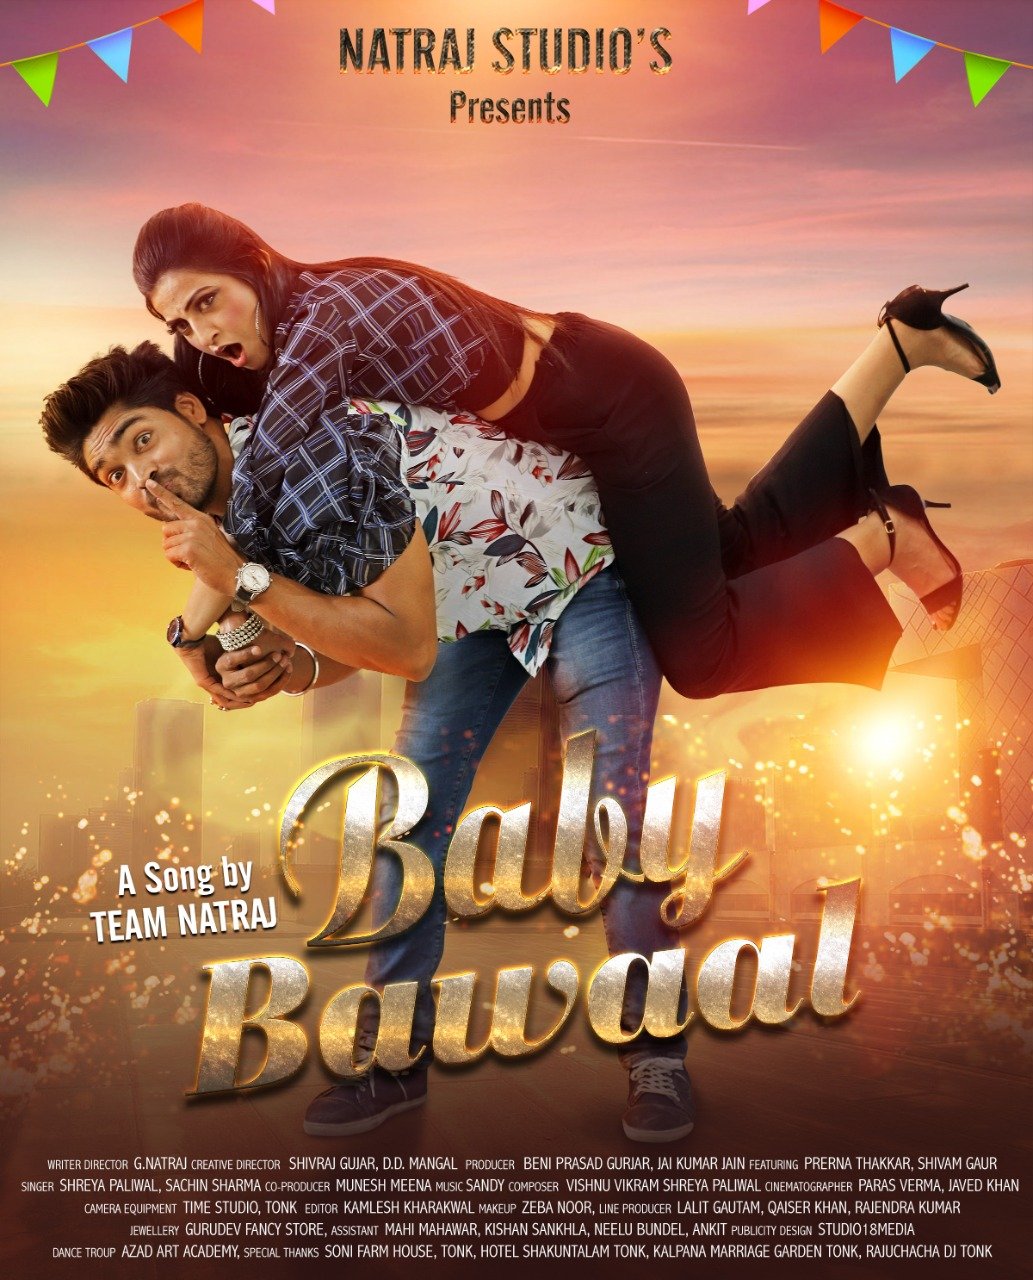 BABY BAWAAL SONG RELEASE : शिवम गौड़ ने प्रेरणा ठक्कर को कहा 'बेबी बवाल'

